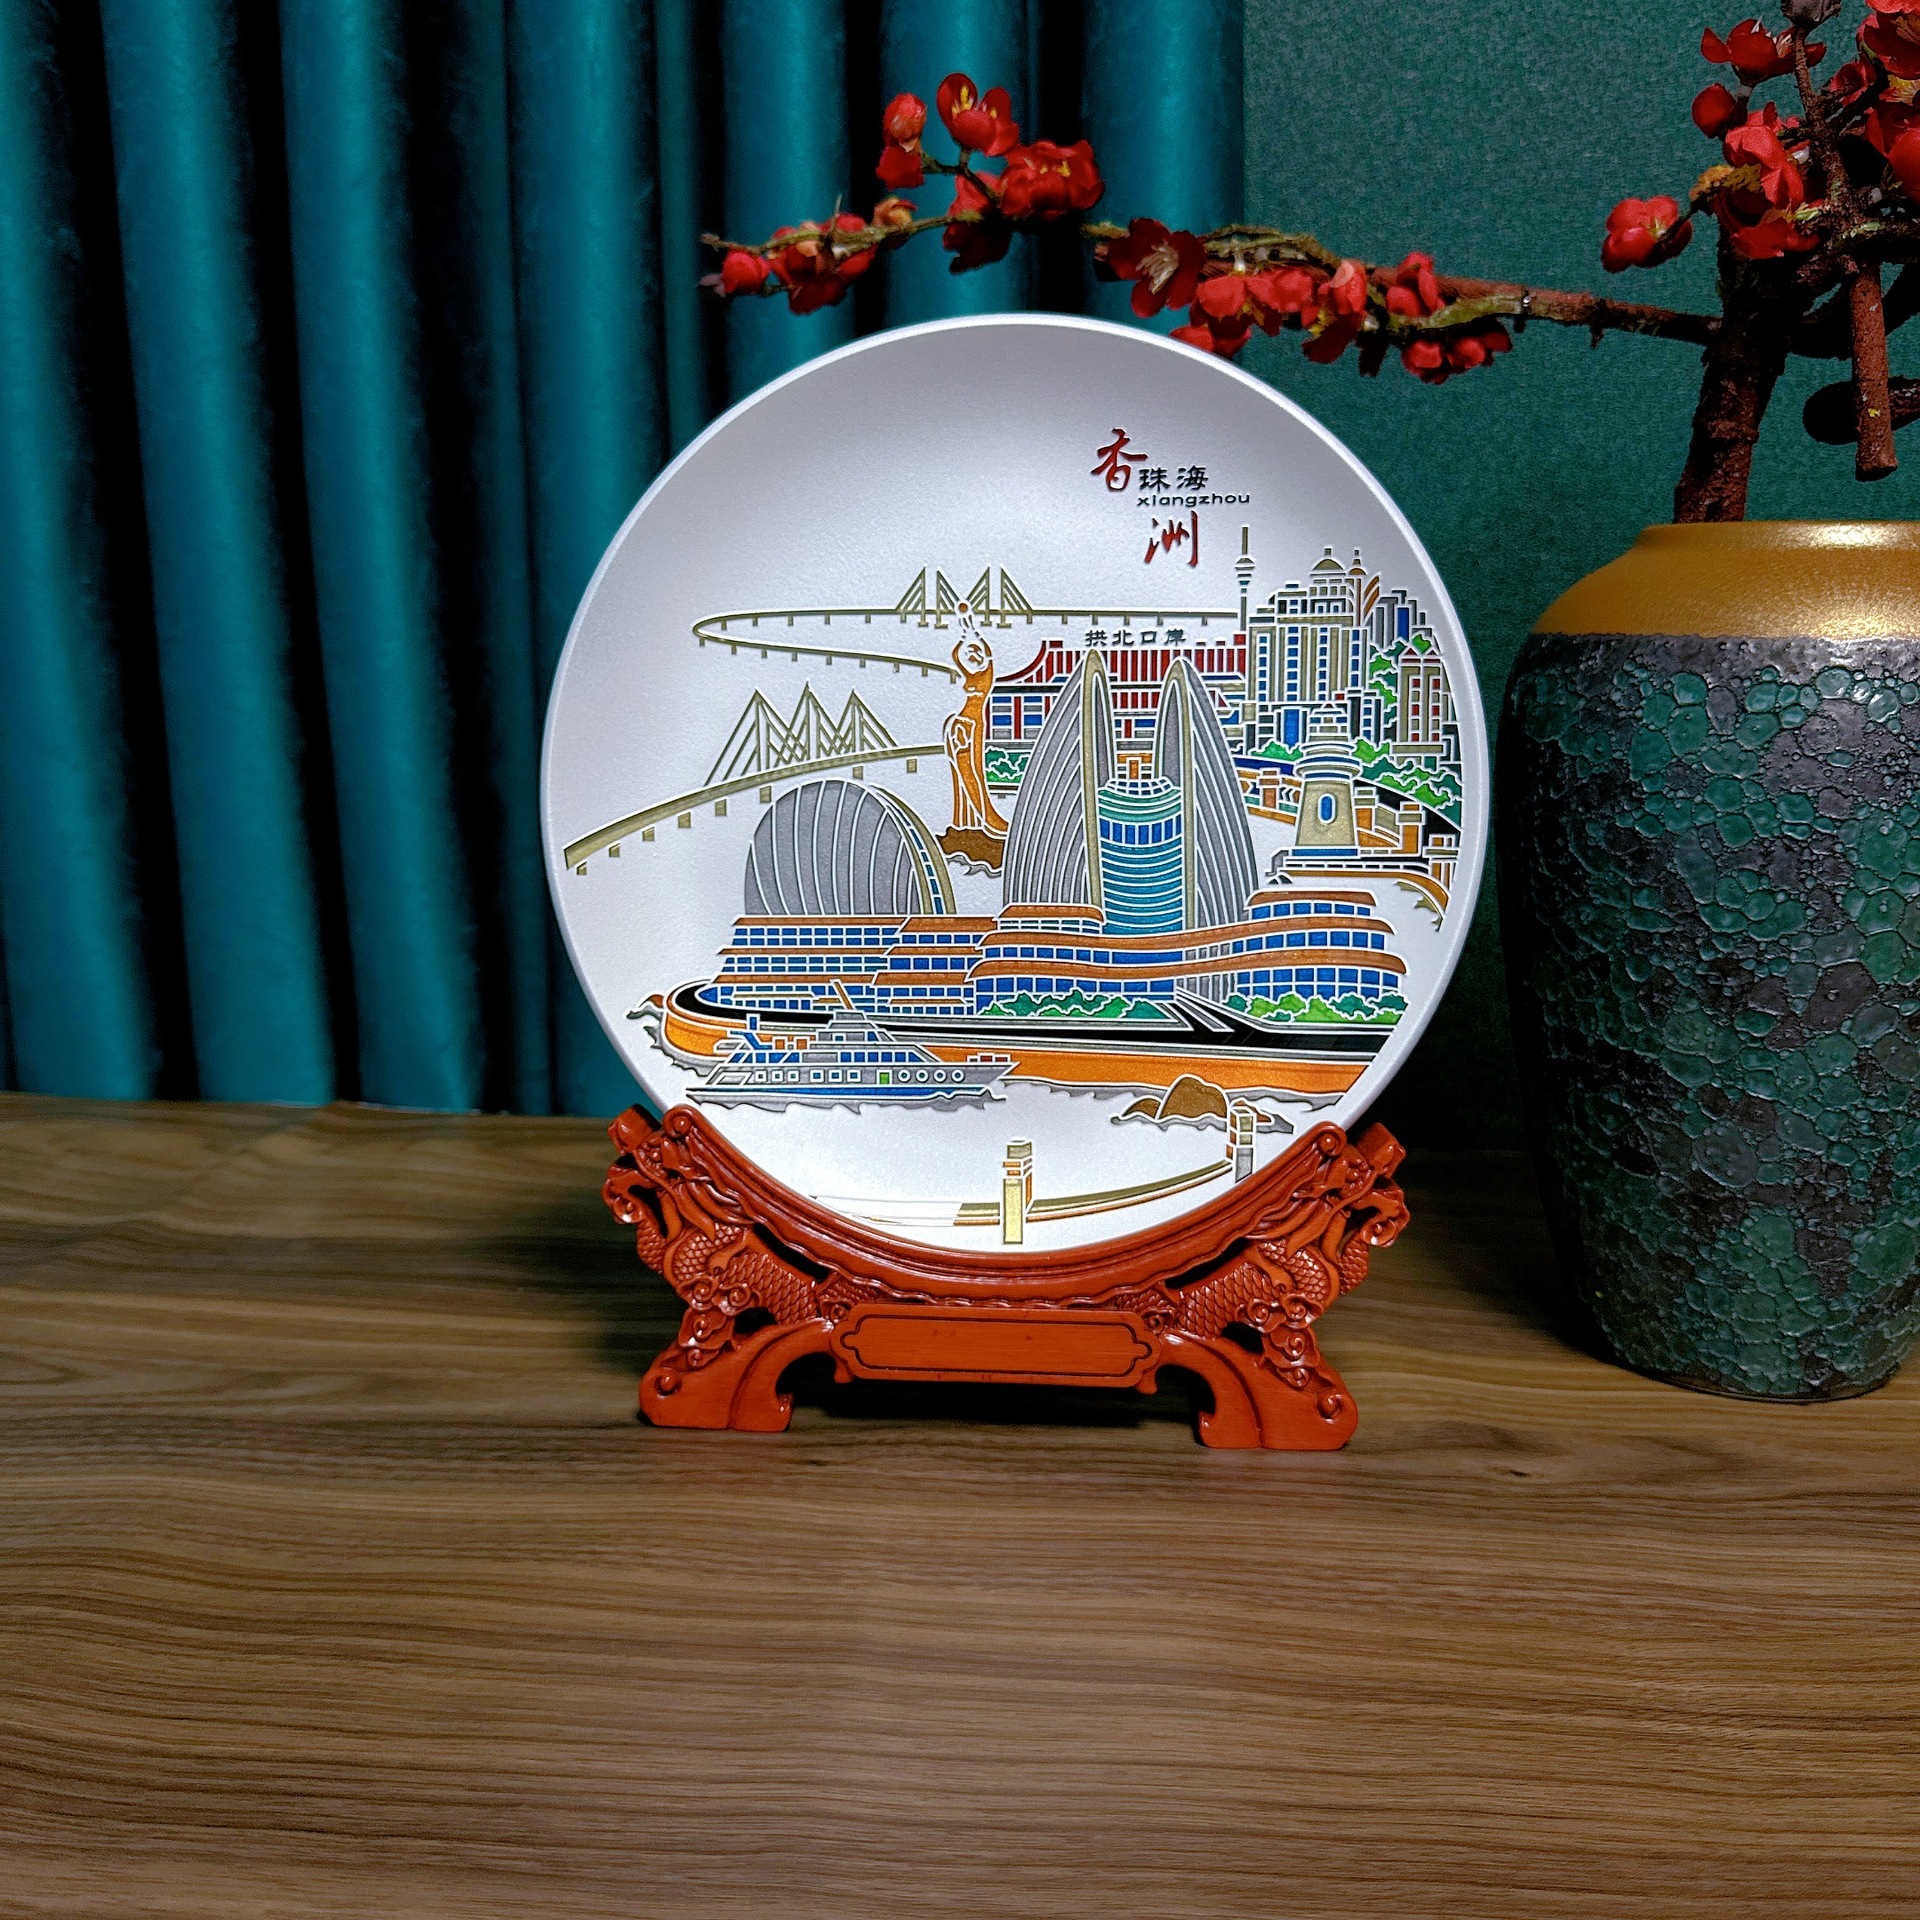 百福十年制造厂珠海香洲纪念品周年礼品玻璃圆盘晶雕纪念盘礼盘